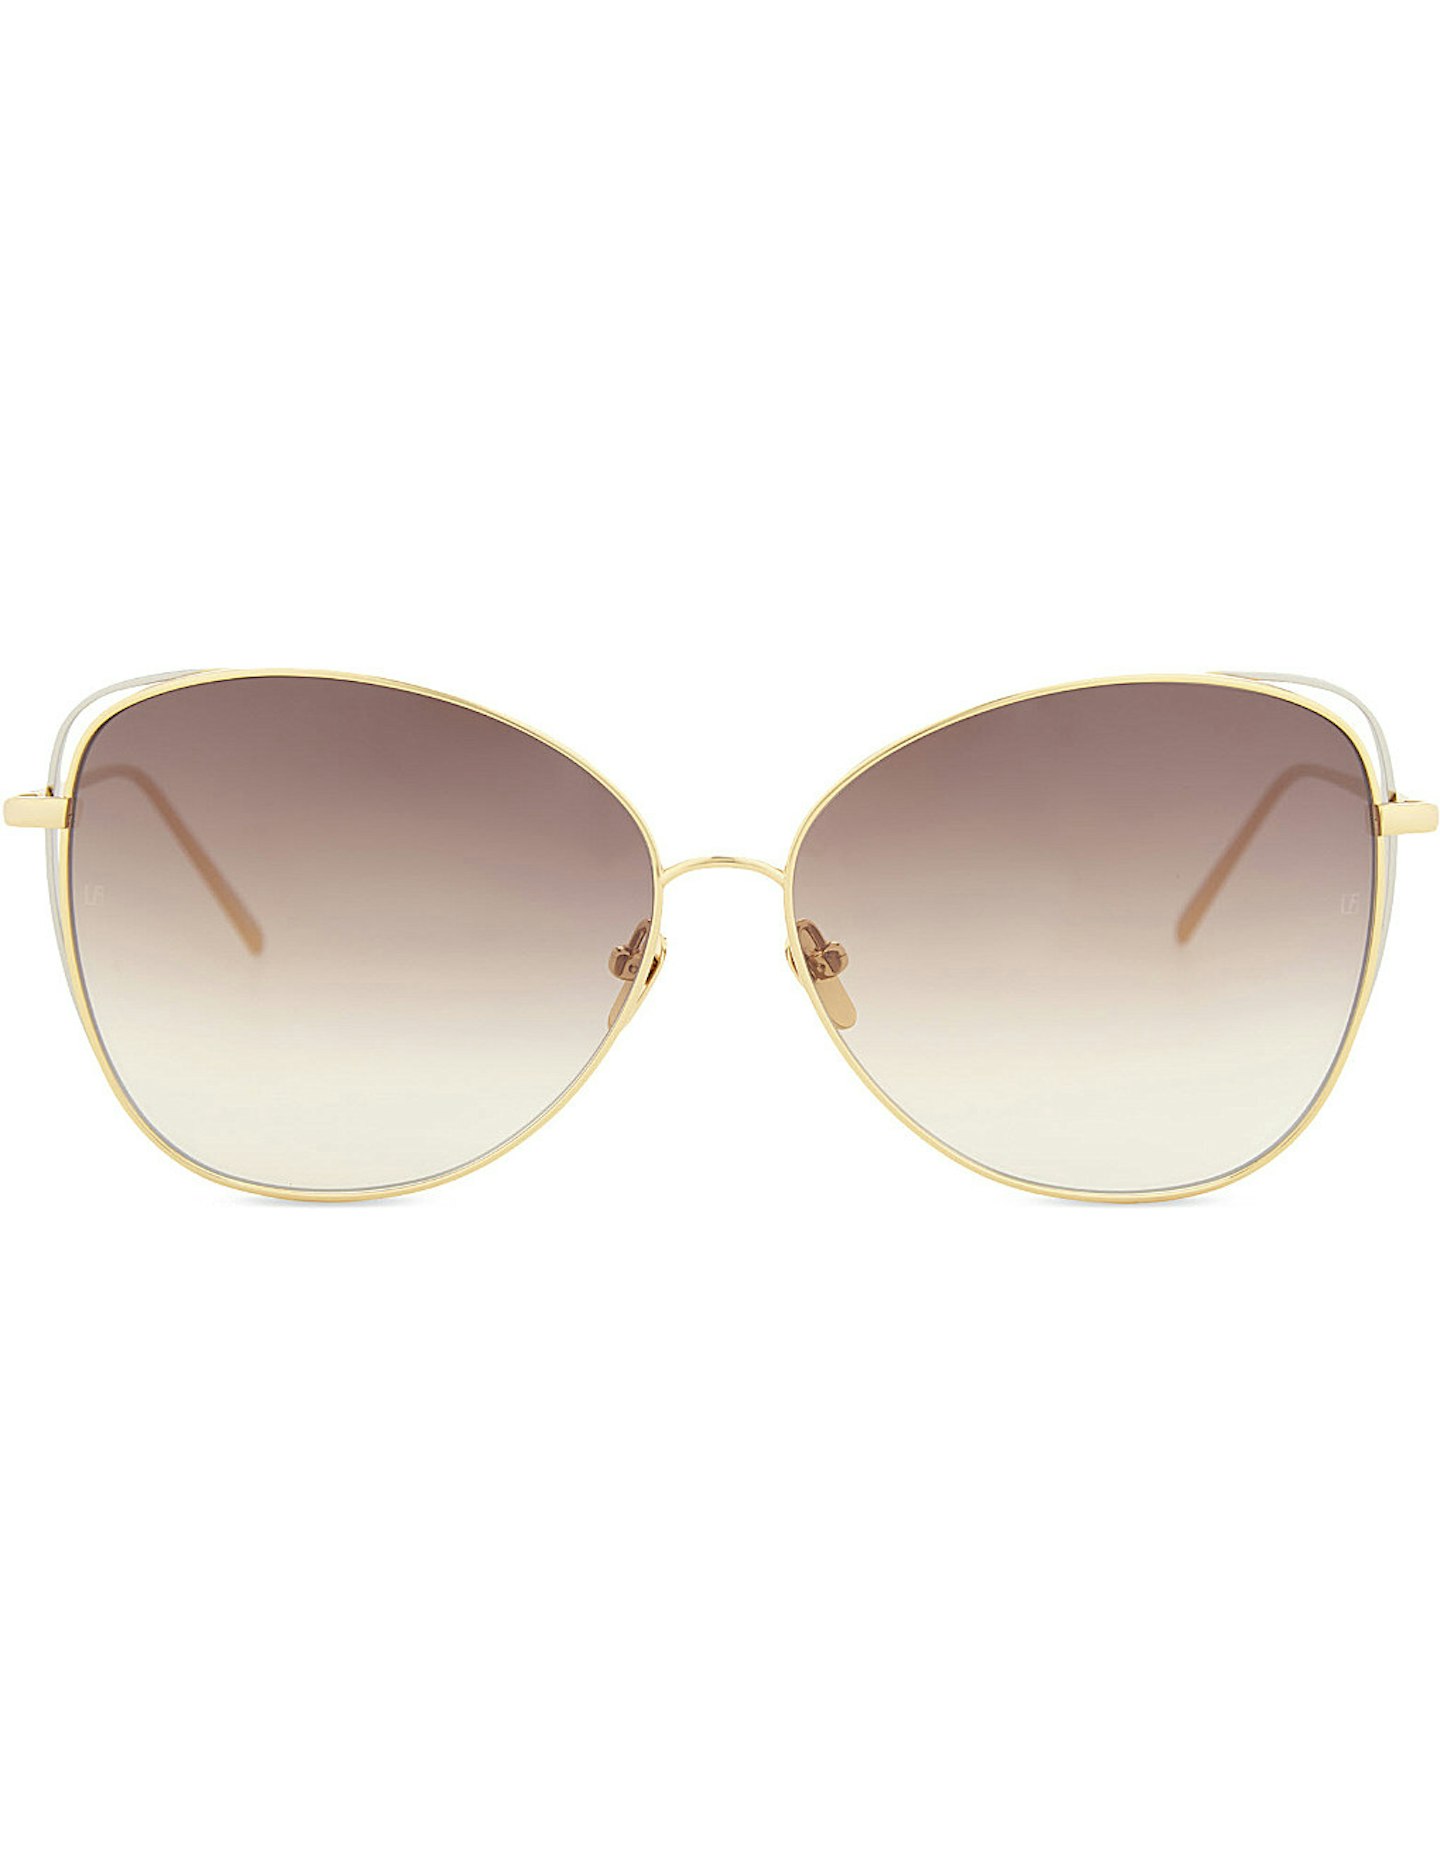 linda-farrow-cat-eye-sunglasses